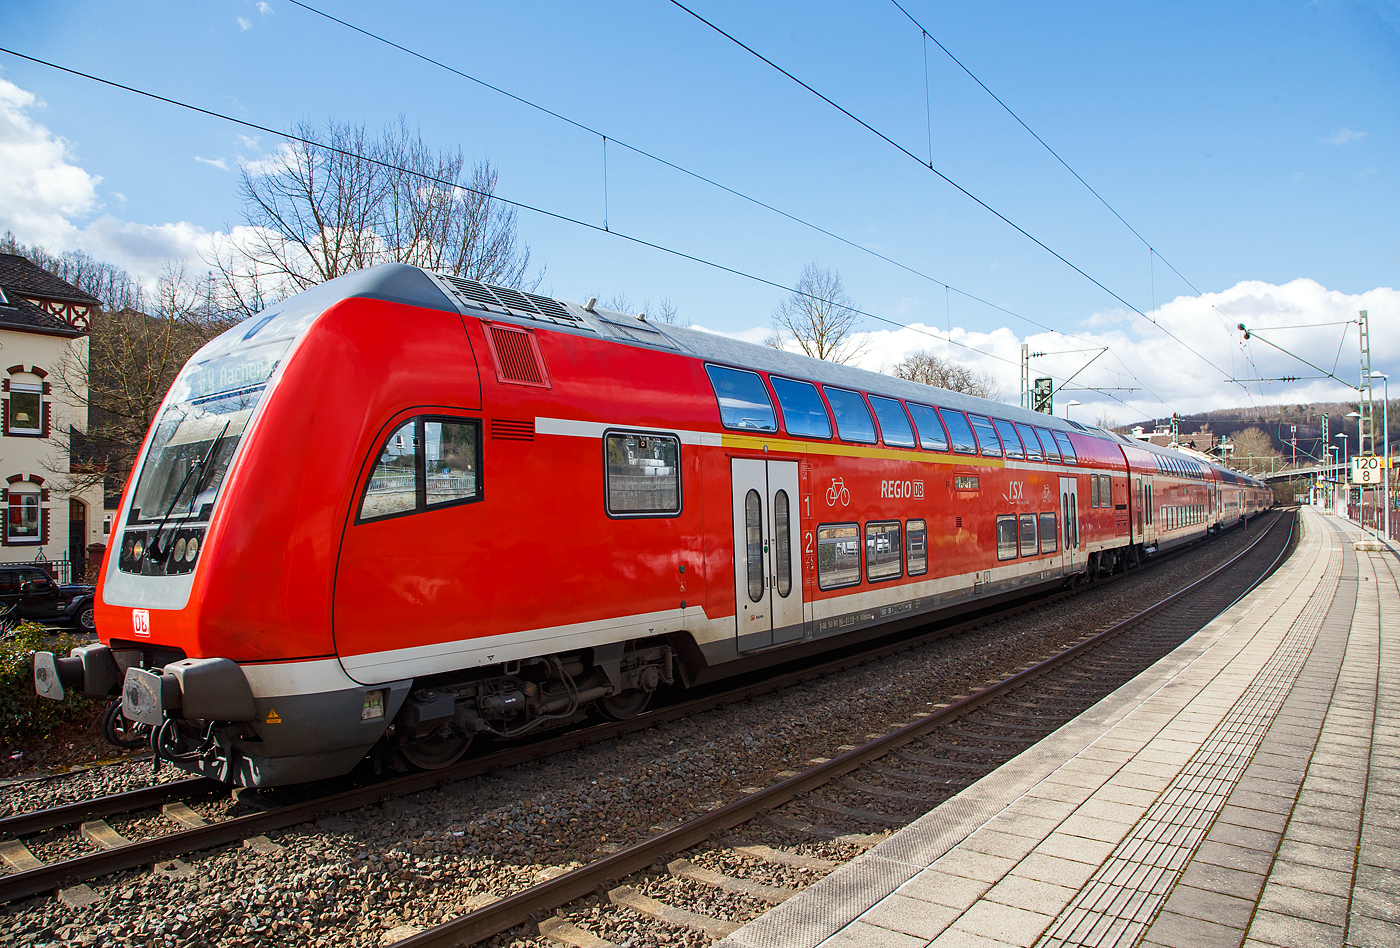 Steuerwagen voraus verlässt der RE 9 rsx - Rhein-Sieg-Express (Siegen – Köln – Aachen) am 19.03.2021 den Bahnhof Kirchen (Sieg) in Richtung Betzdorf.

Vorne der klimatisierte 1./2. Klasse Doppelstock-Steuerwagen (DoSto-Steuerwagen) ist der D-DB 50 80 86-81 119-9 der Gattung DABpbzfa 767.3, vom rsx - „Rhein-Sieg-Express“ der DB Regio NRW der DB Regio NRW. Dieser wurde 2010 von Bombardier im Werk Görlitz gebaut für den „Rhein-Sieg-Express“ der DB Regio NRW. Von der Bauart 767.3 gibt es auch nur 2 Stück diesen und den 118-1 beide sind beim Rhein-Sieg-Express (RE 9) im Einsatz.

TECHNISCHE DATEN:
Hersteller: Bombardier Werk Görlitz, ex Deutsche Waggonbau AG (DWA)
Spurweite: 1.435 mm
Länge über Puffer: 27.270 mm
Wagenkastenlänge: 26.660 mm
Wagenkastenbreite: 2.784 mm
Höhe über Schienenoberkante: 4.631 mm
Drehzapfenabstand: 20.000 mm
Achsstand im Drehgestell: 2.500 mm
Drehgestellbauart: Görlitz VIII
Leergewicht: 53 t
Höchstgeschwindigkeit: 160 km/h
Bremsbauart: KE-PR-A-Mg-mZ (D)
Sitzplätze: 38 (1.Klasse) / 41 (2. Klasse)
Toiletten: 1, behindertengerecht, geschlossenes System
Bemerkungen: 2 Mehrzweckabteil, 1 Dienstraum, uneingeschränkt dieselloktauglich

Schublok war die 146 006-2 (91 80 6146 006-2 D-DB) der DB Regio NRW.